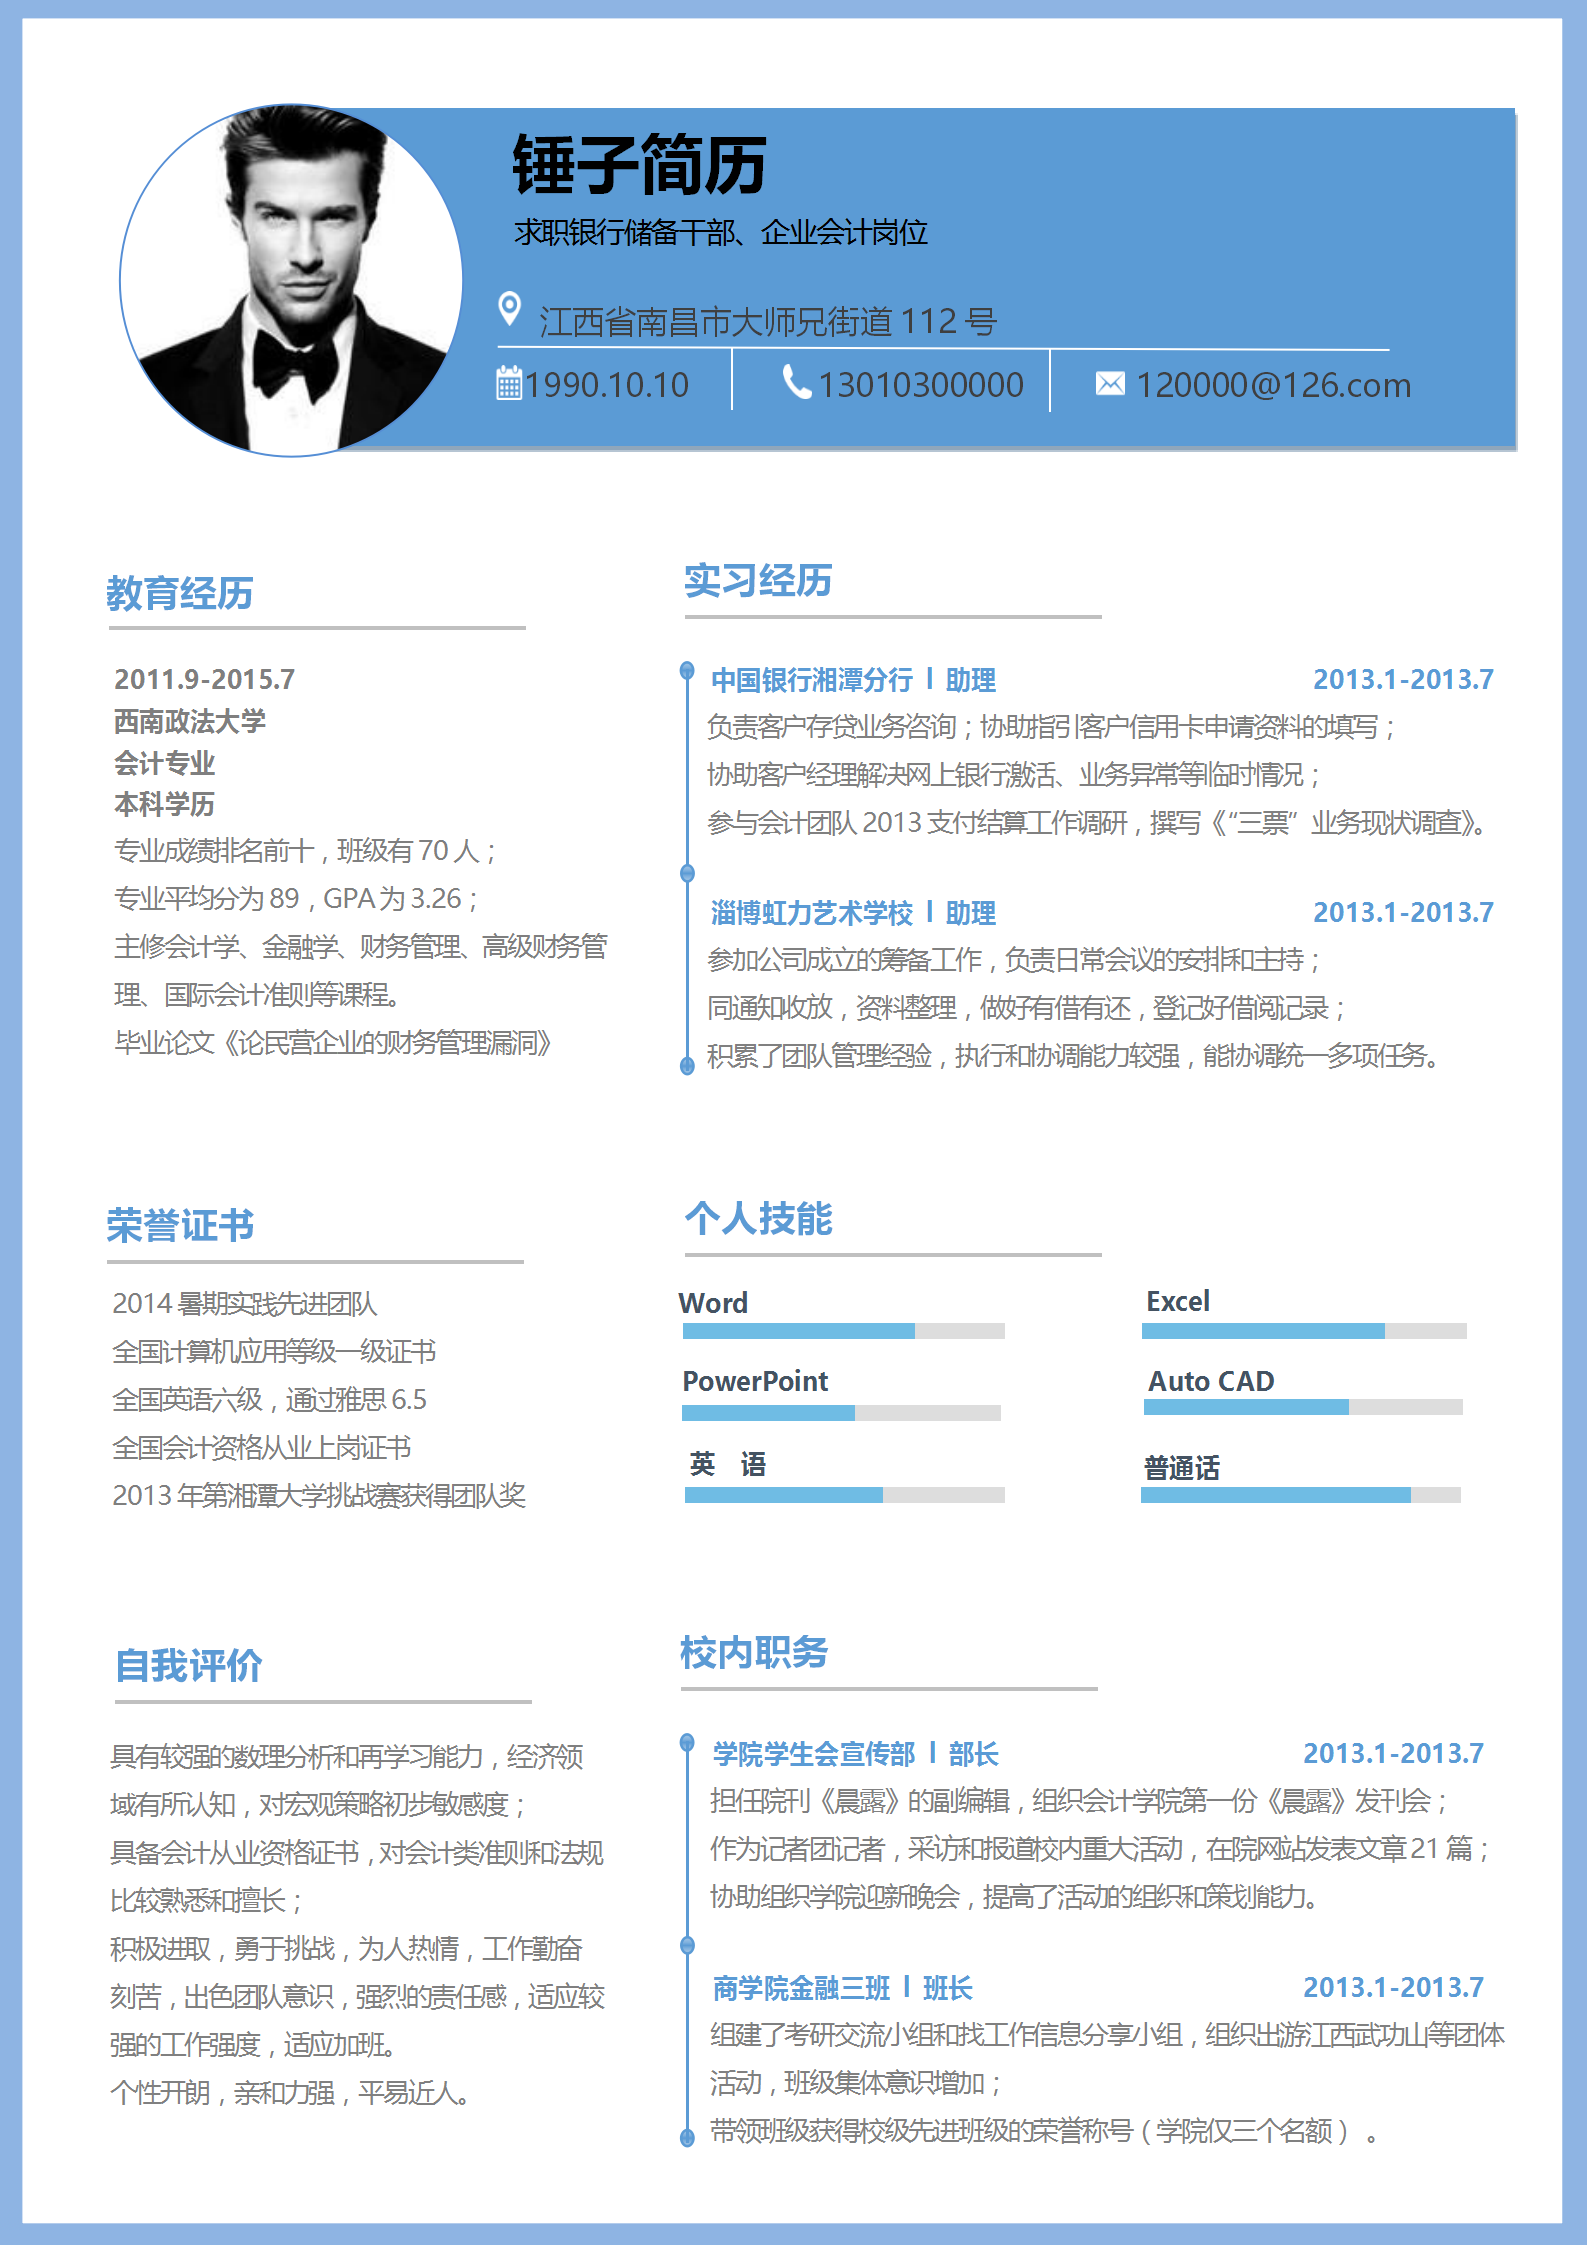 互联网市场运营简历模板免费下载 -超级简历WonderCV